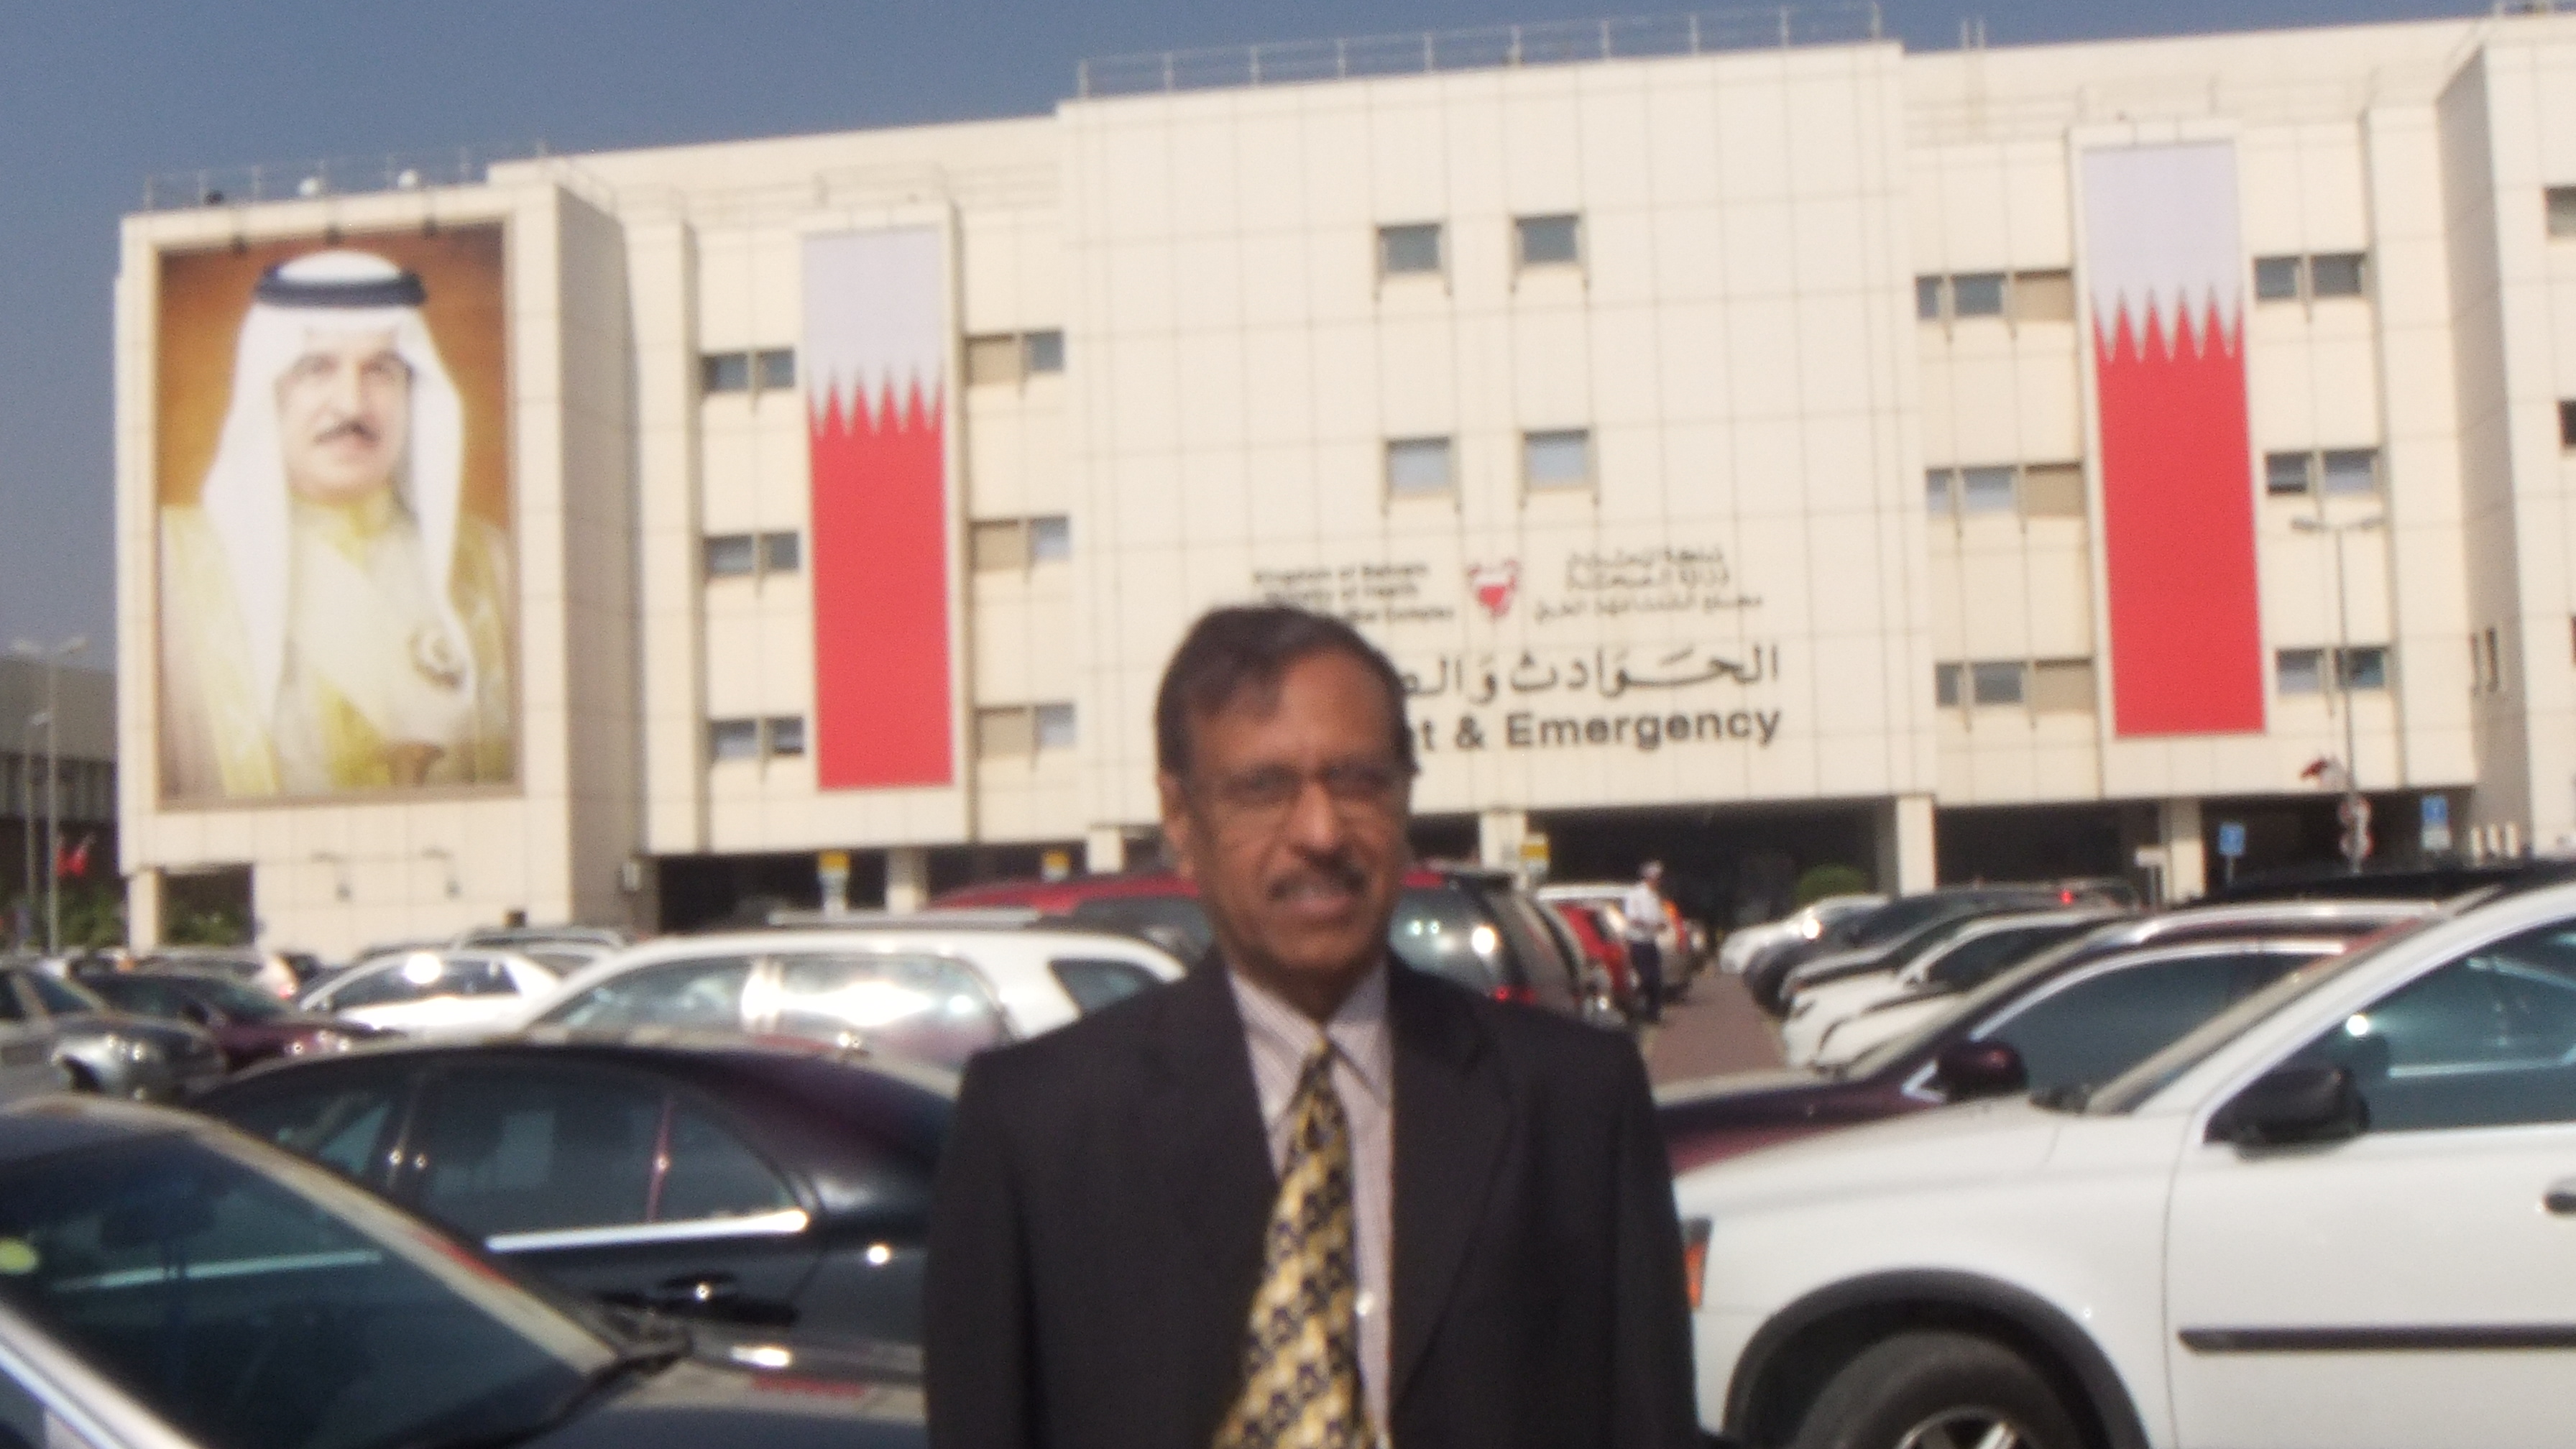 Bhavani Shankar Kodali in Bahrain